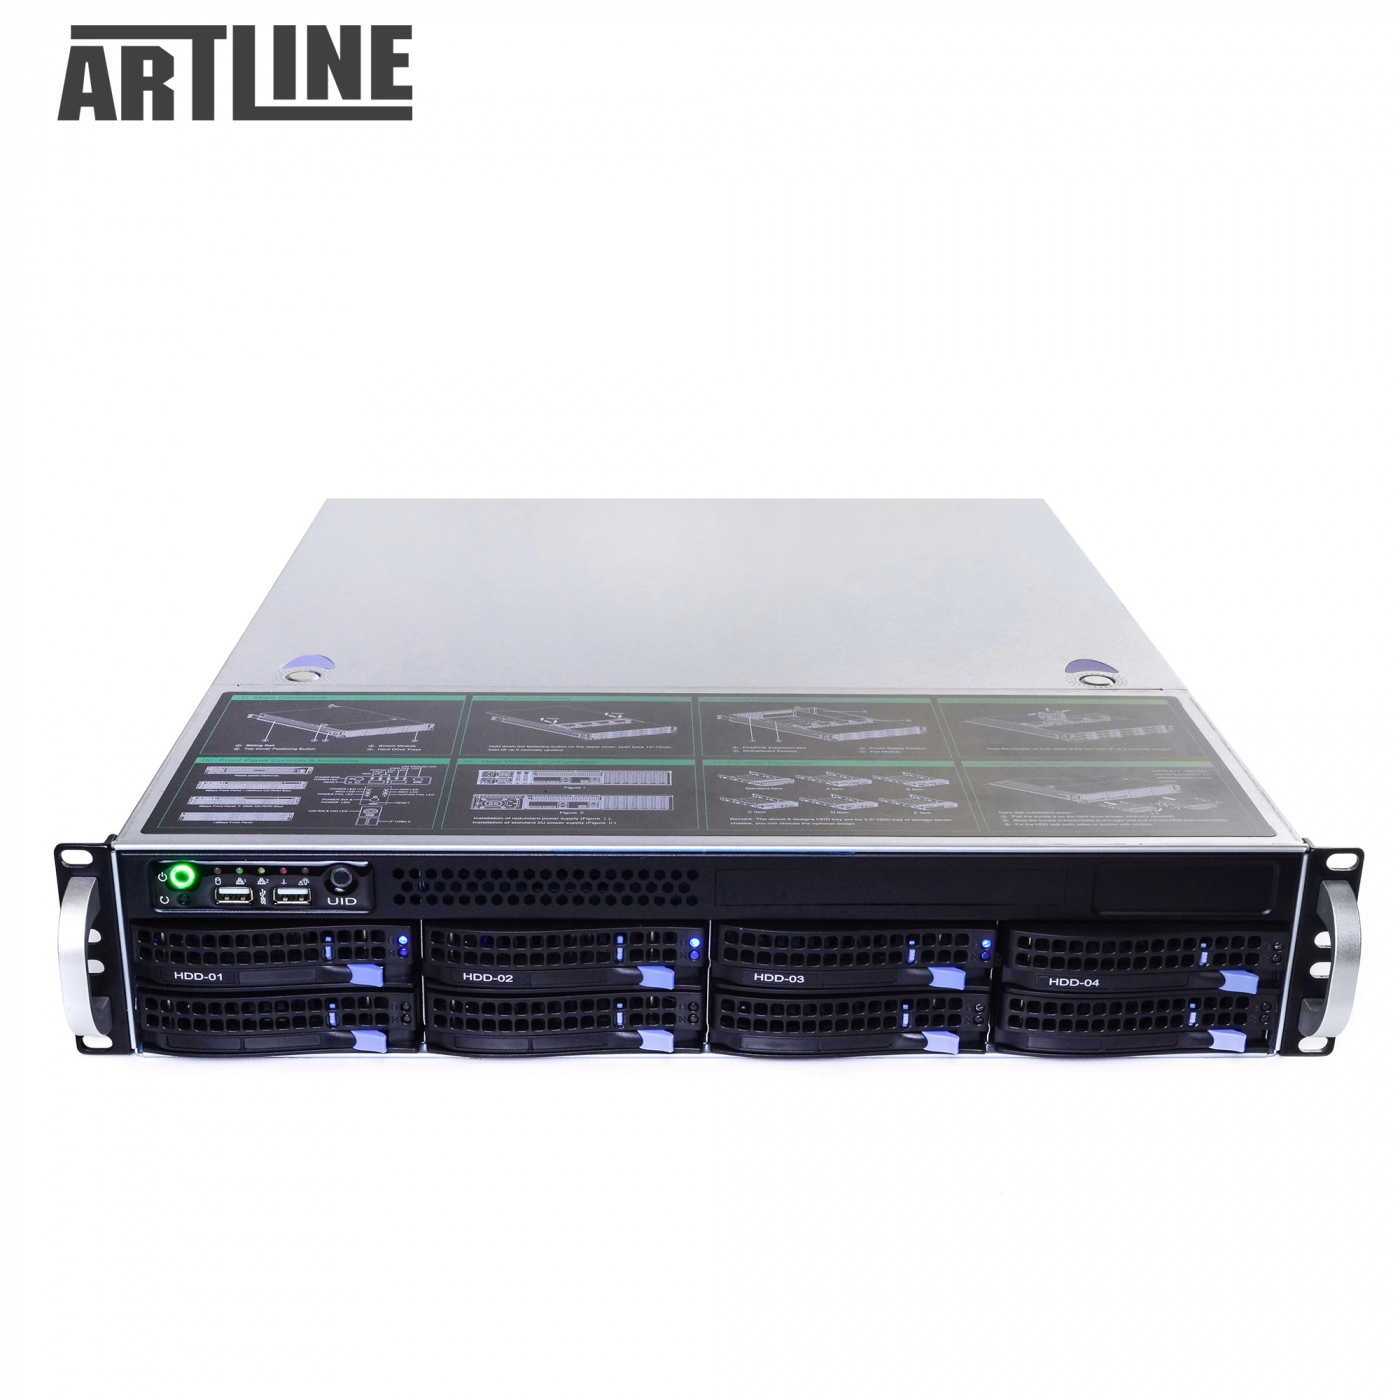 Купить Сервер ARTLINE Business R38v03 - фото 10